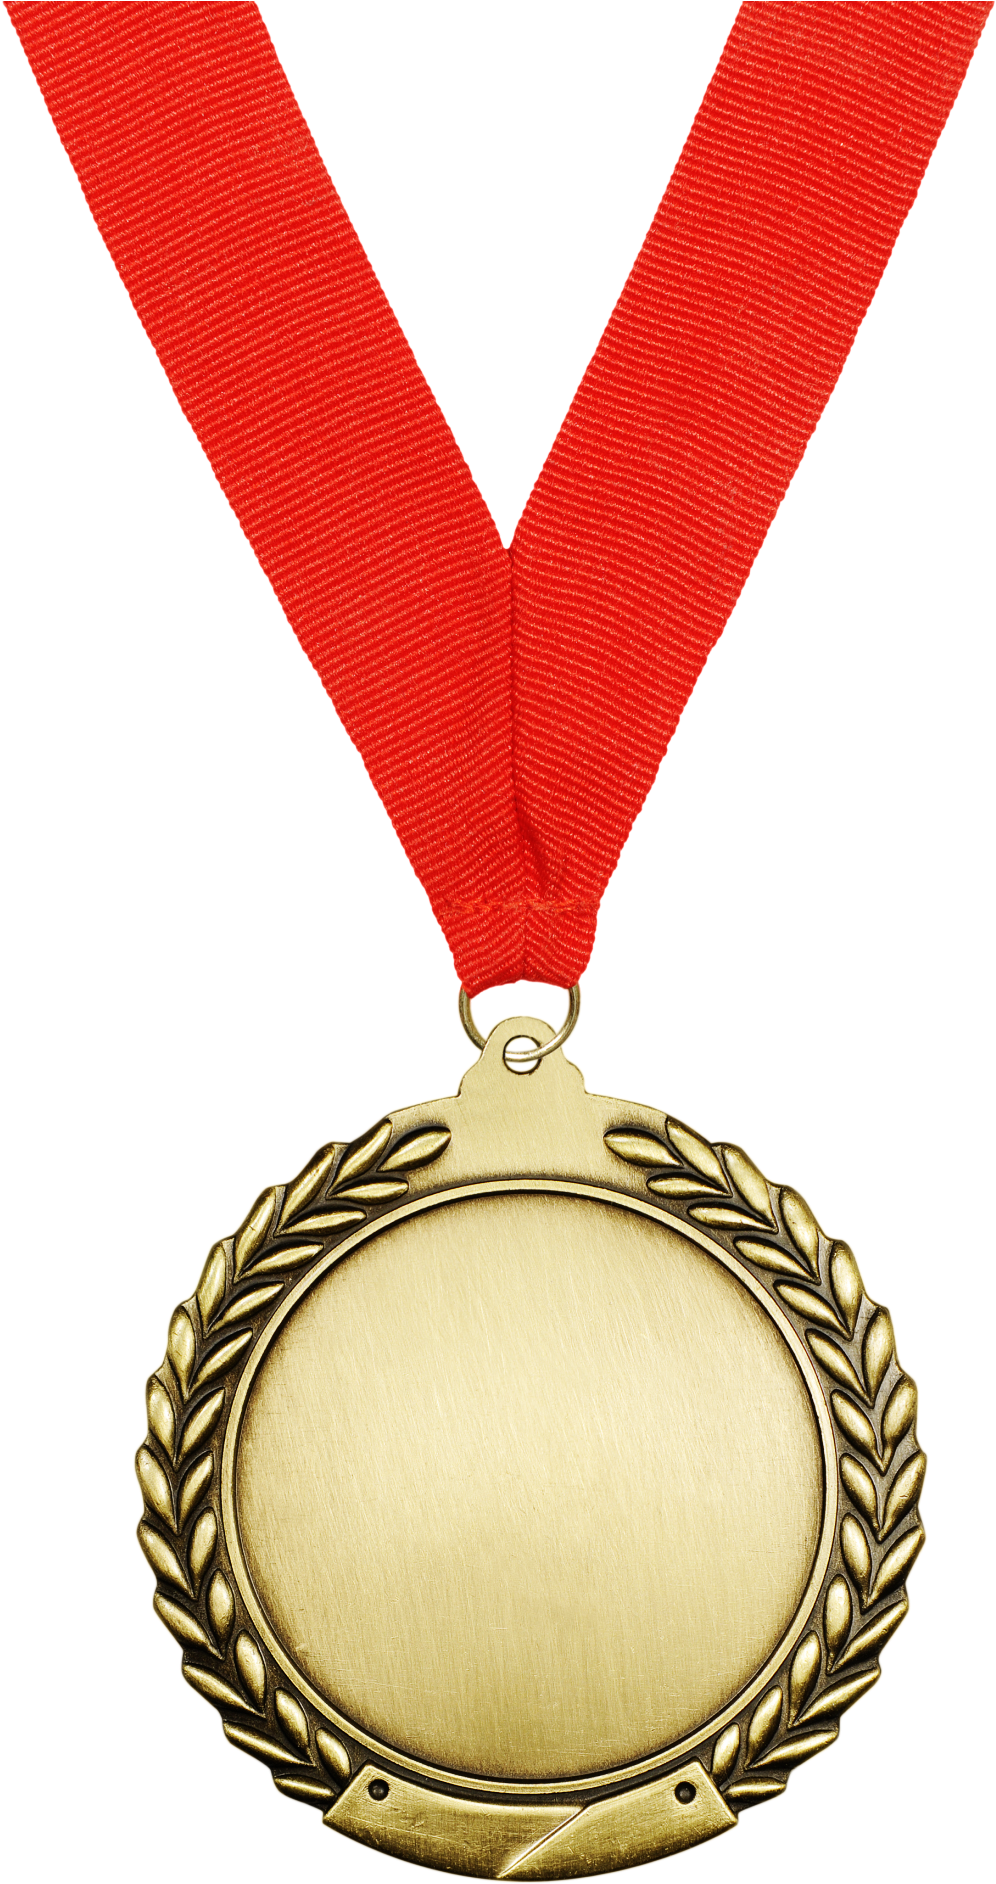 Gold Medal Silver Medal Bronze Medal - Gold Medal Silver Medal Bronze Medal (1452x2135)